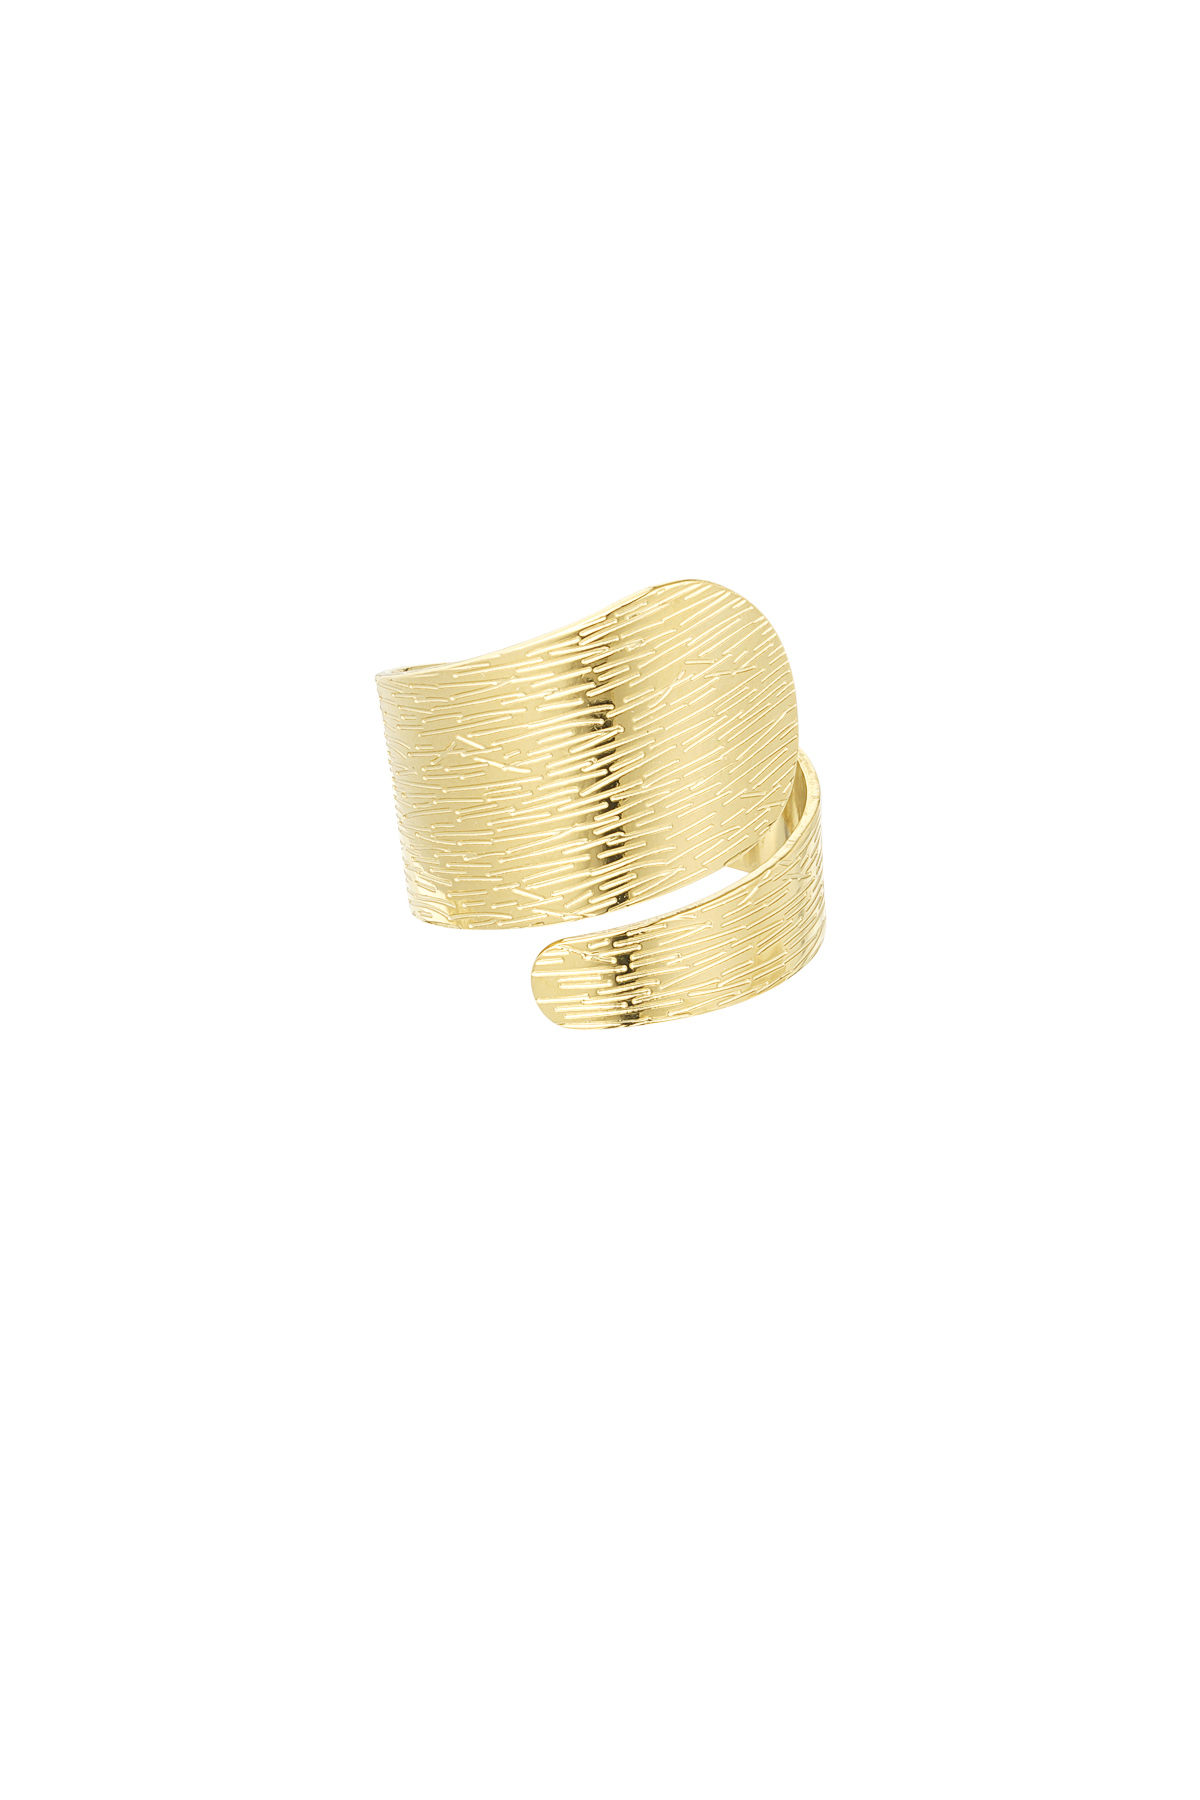 Gedraaide ring met structuur - goud 